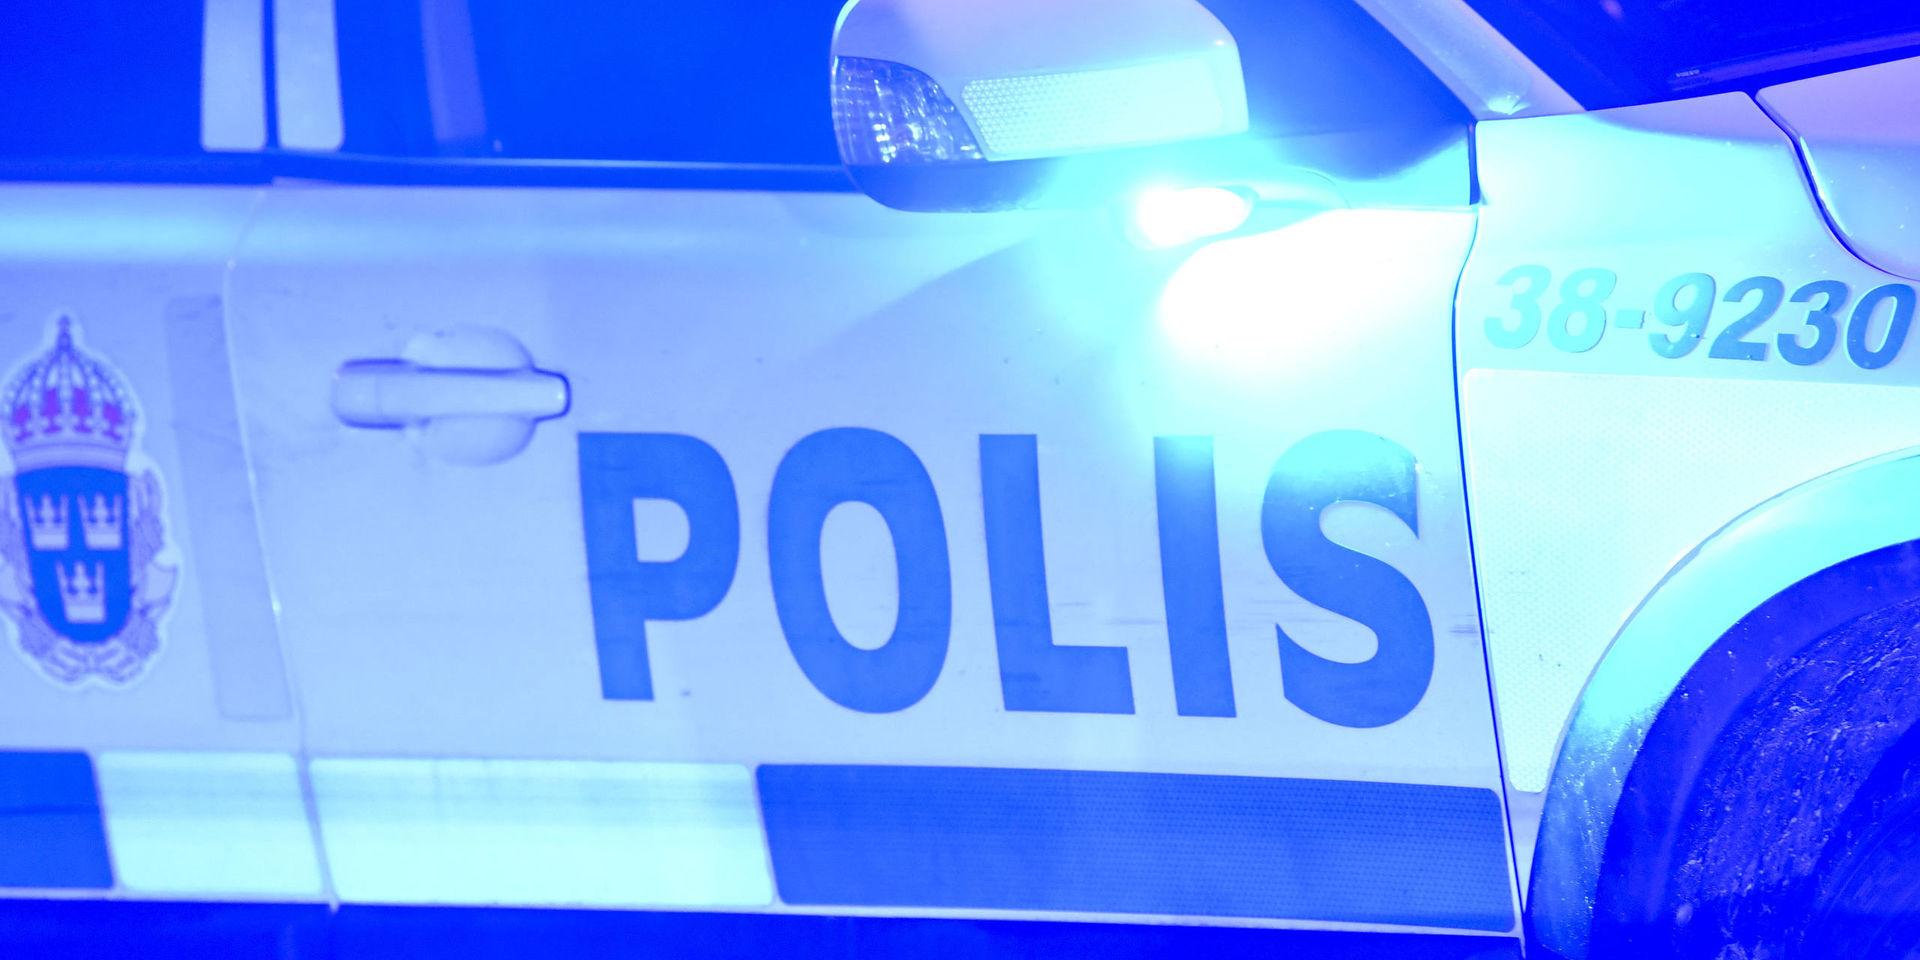 Midsommarkvällen och natten blev stökig, enligt polisen i Västra götaland.